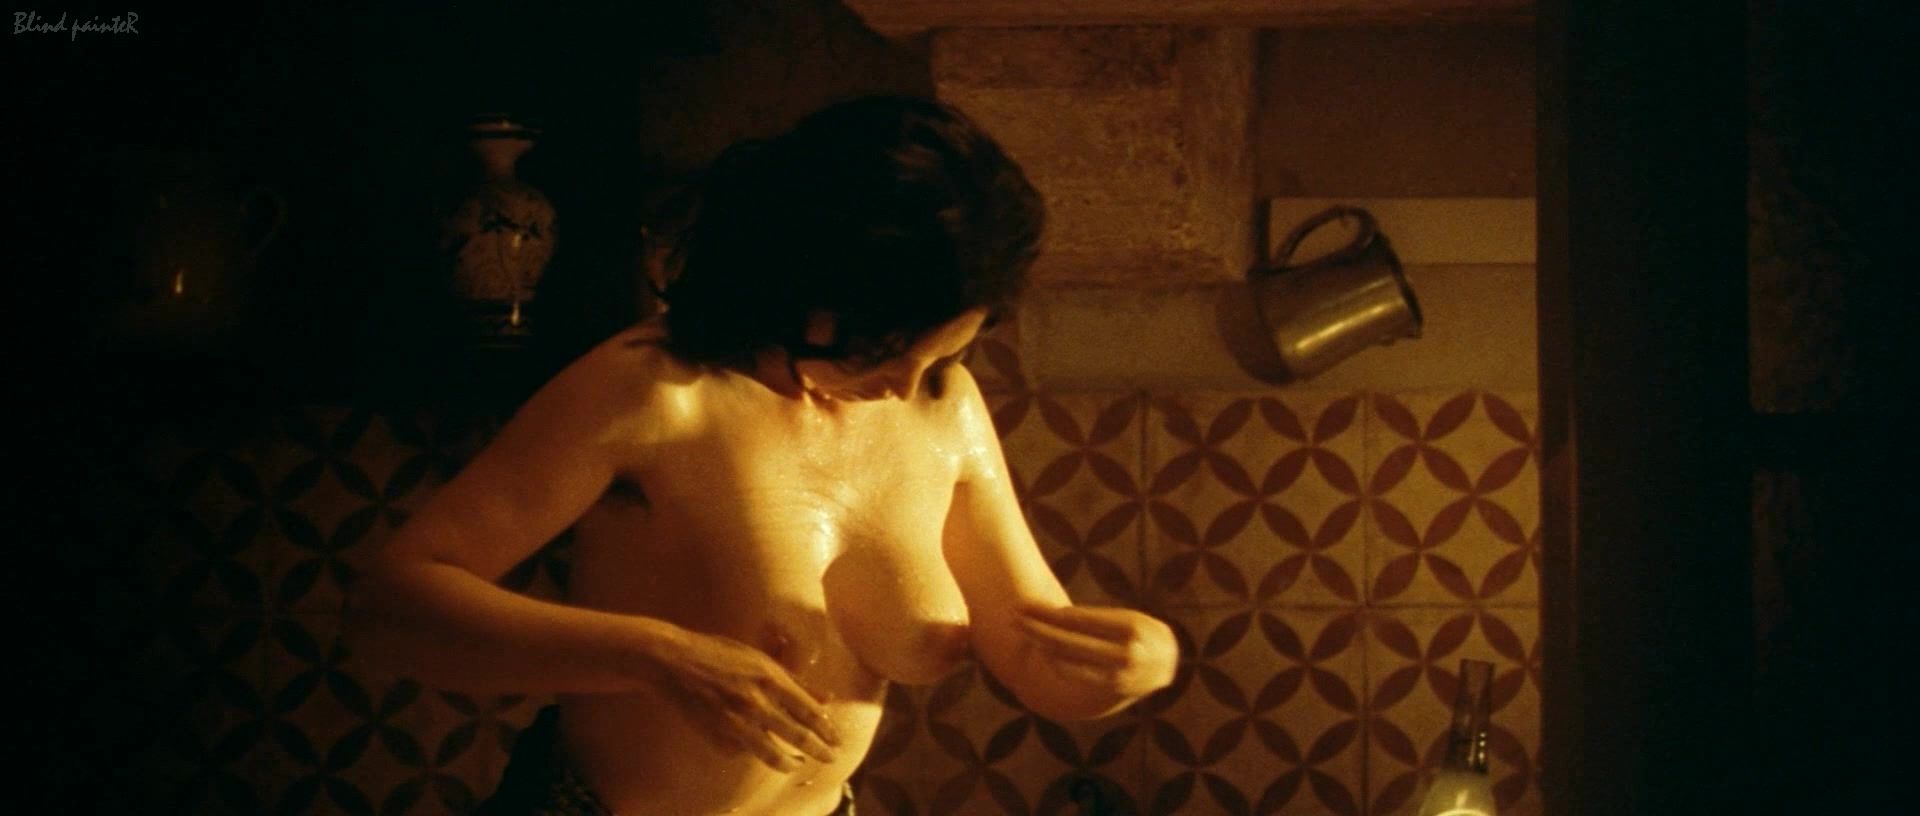 Latin Sex video Monica Bellucci nude - Malèna (2000) HDZog - 2